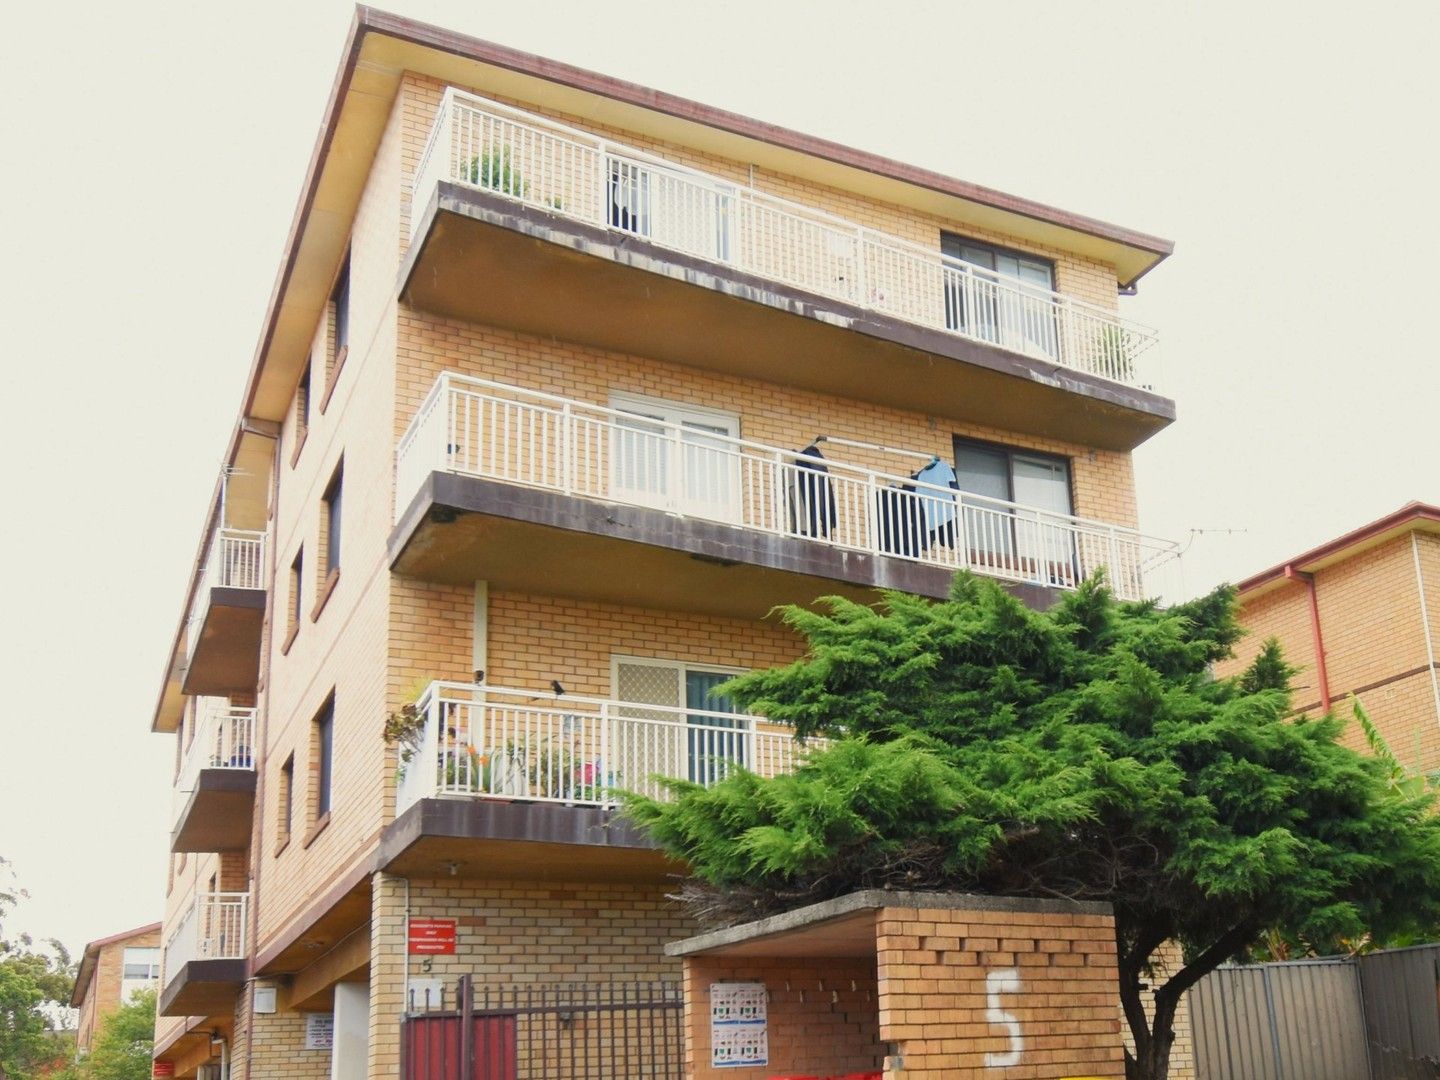 2 bedrooms Apartment / Unit / Flat in 2/5 Acacia Street CABRAMATTA NSW, 2166